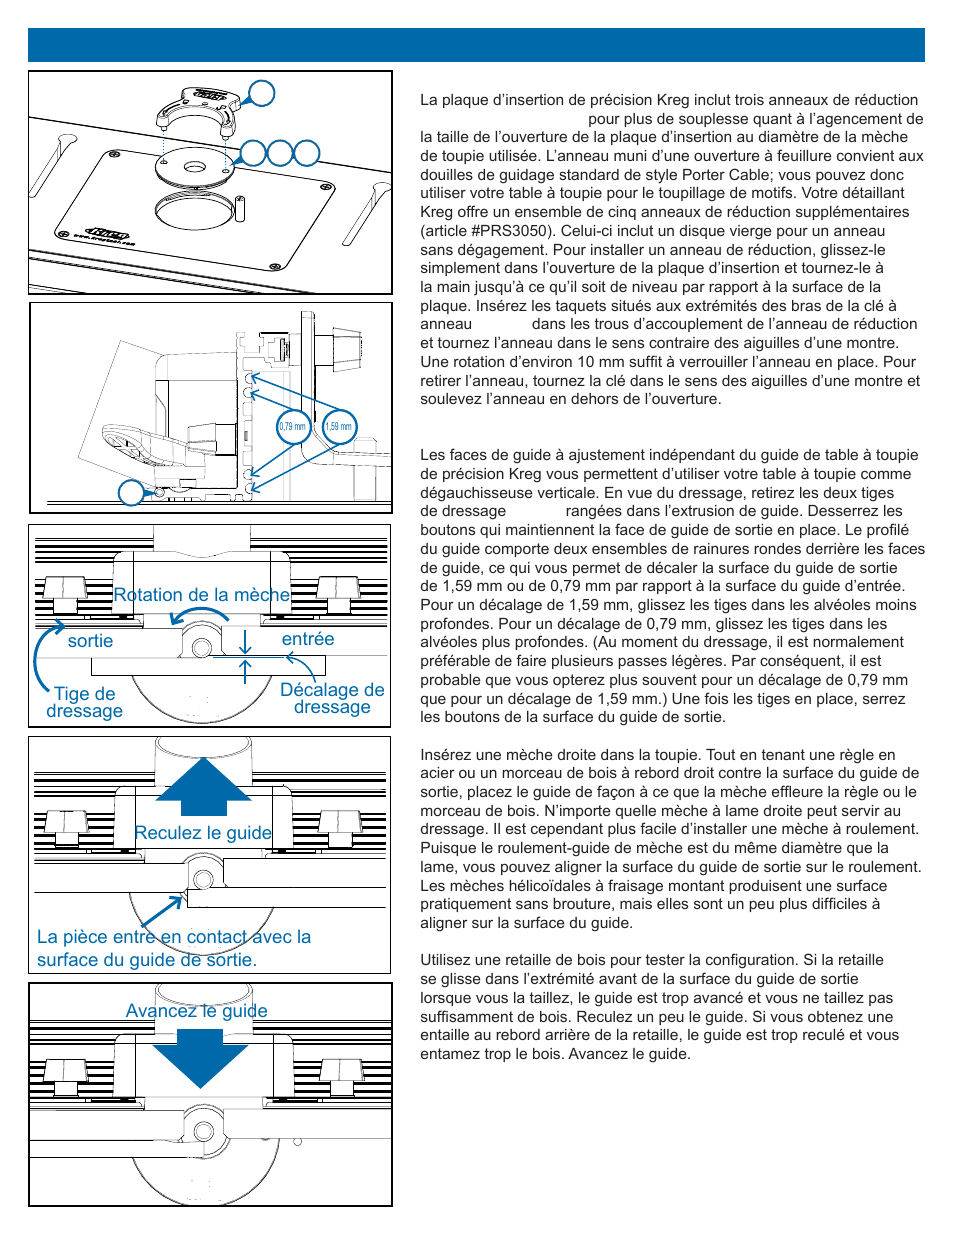 Utilisation de votre table à toupie | Kreg PRS2100 Precision Benchtop Router Table User Manual | Page 18 / 28